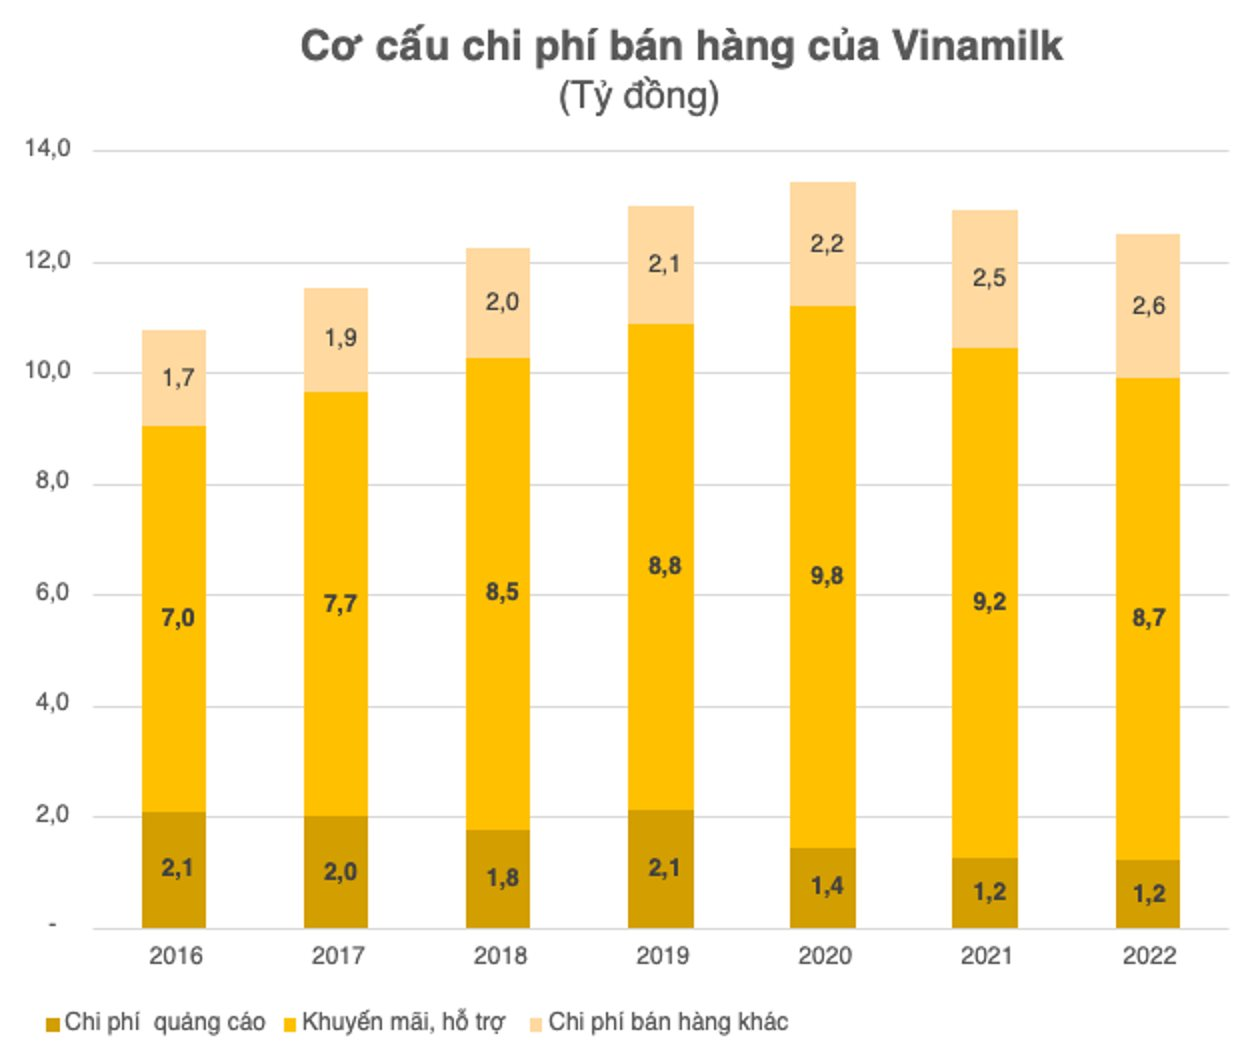 Lợi nhuận về đáy 7 năm, Vinamilk tiếp tục cắt mạnh chi phí quảng cáo, khuyến mại, mỗi ngày chỉ &quot;đốt&quot; 27 tỷ đồng cho quảng cáo sữa - Ảnh 2.